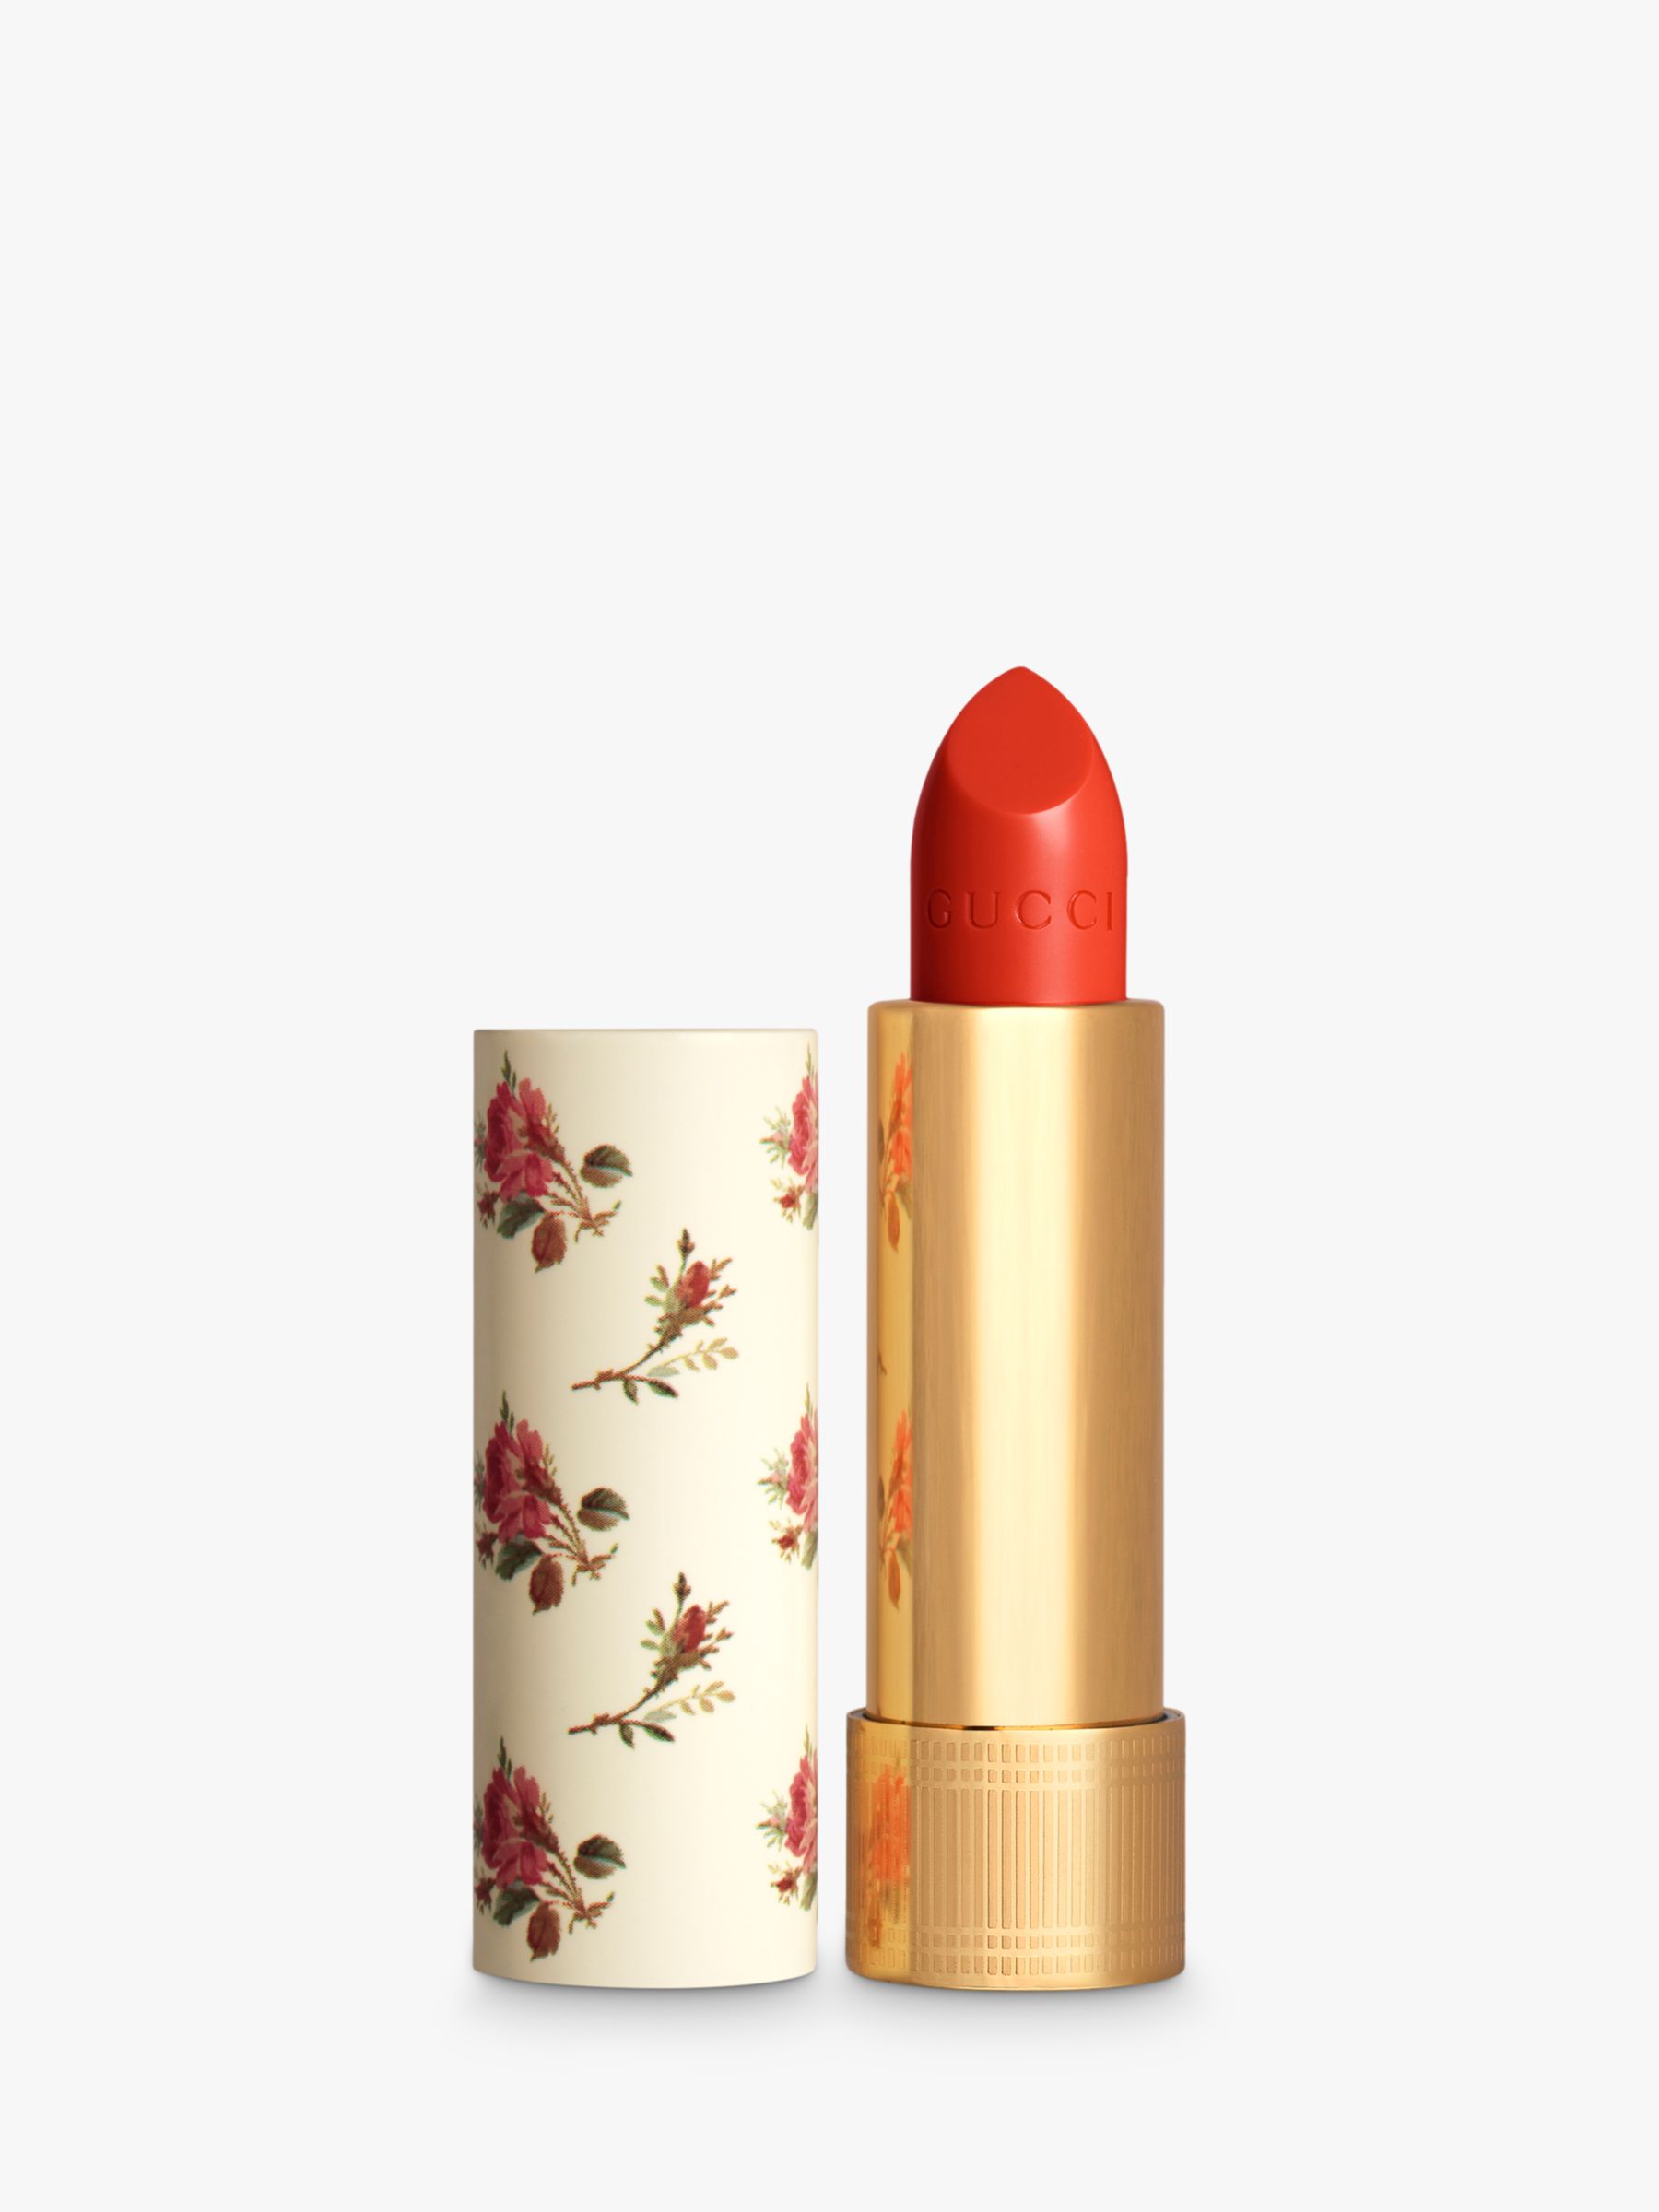 Gucci Rouge À Lèvres Voile Lipstick, 302 Agatha Orange 1